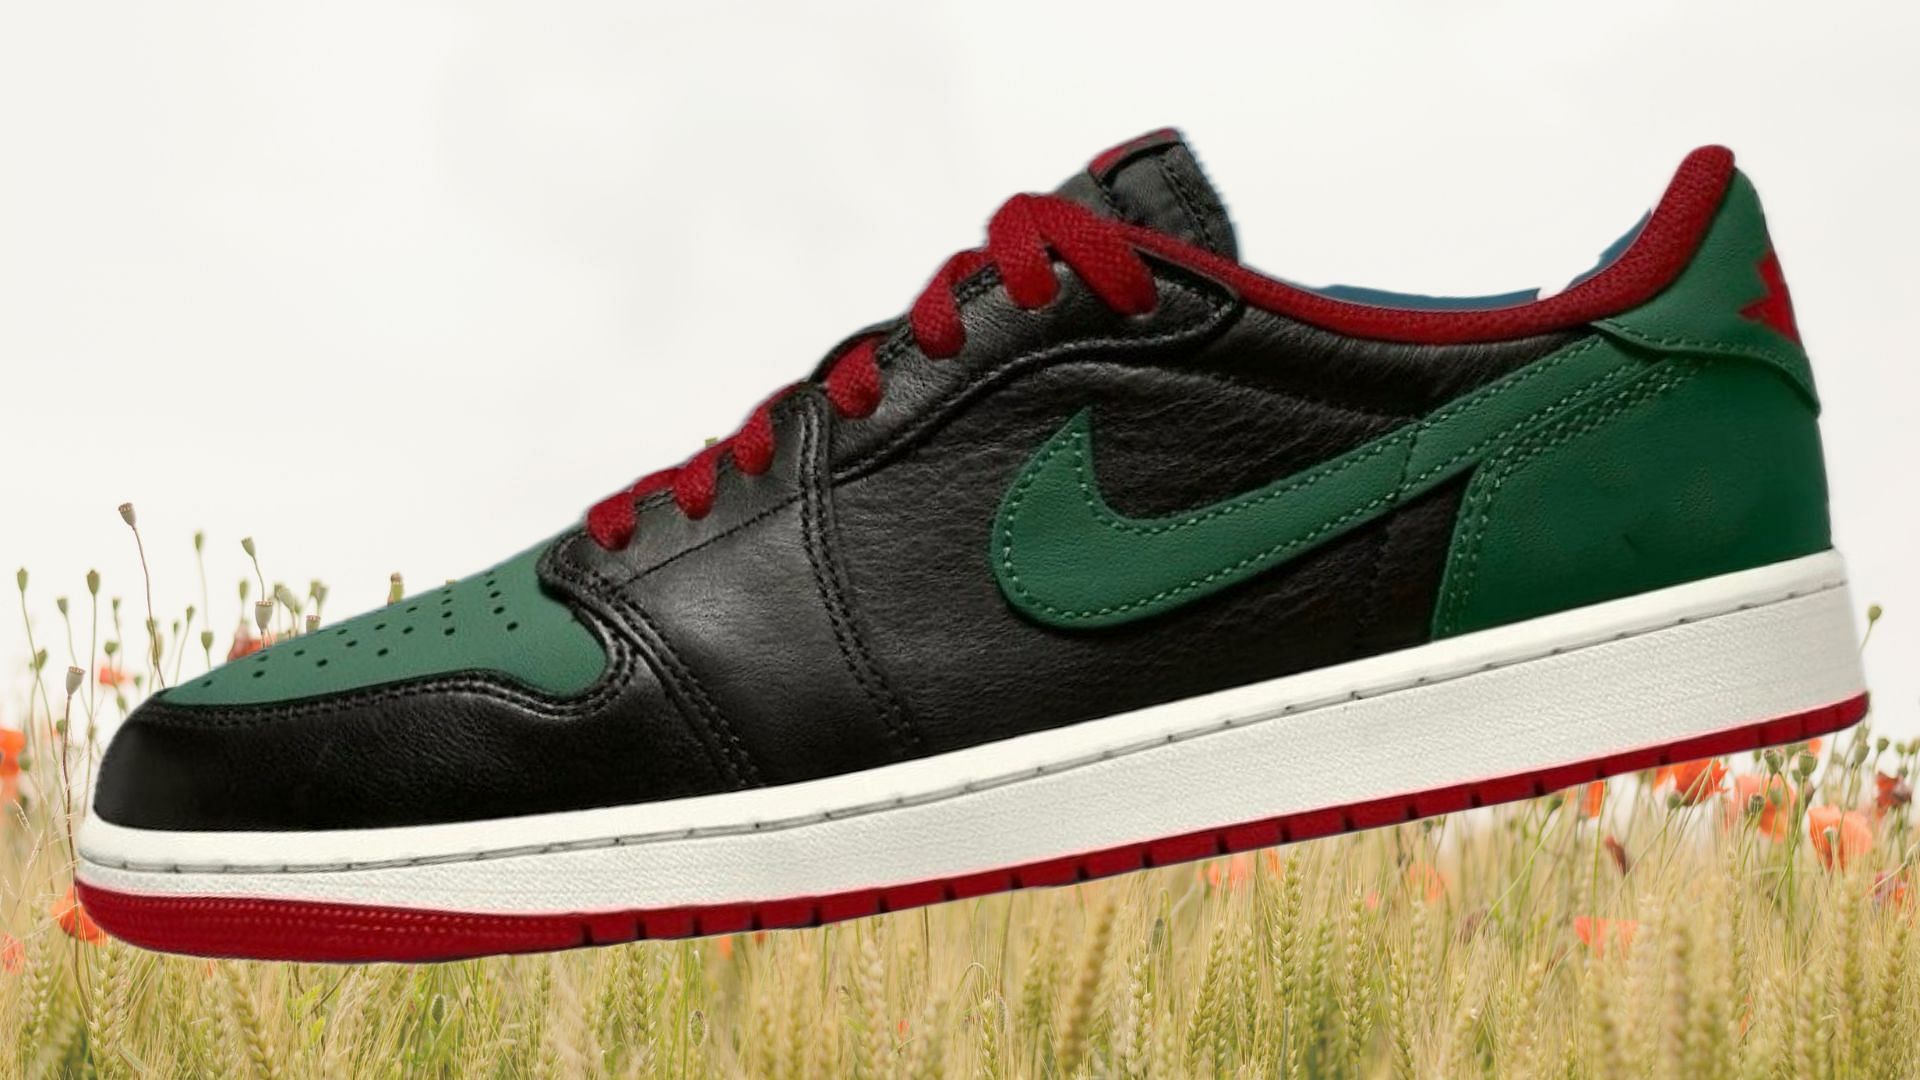 Air Jordan 1 Low Gorge Green sneakers (Image via Instagram/@sneakerfiles)